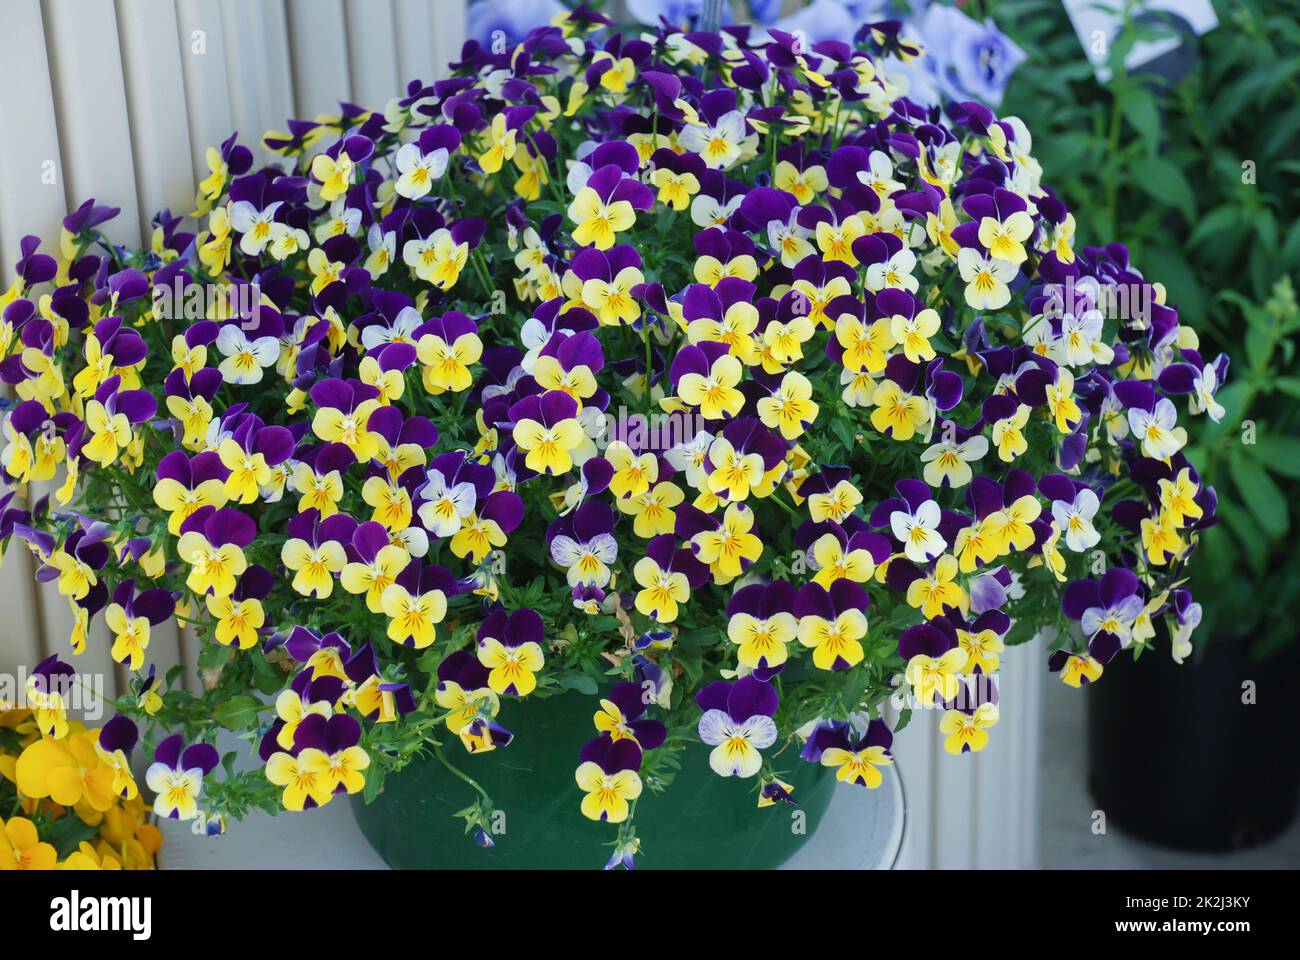 Pansies de fleurs jaunes et violettes une fleur de pansy colorée pleine fleur Banque D'Images